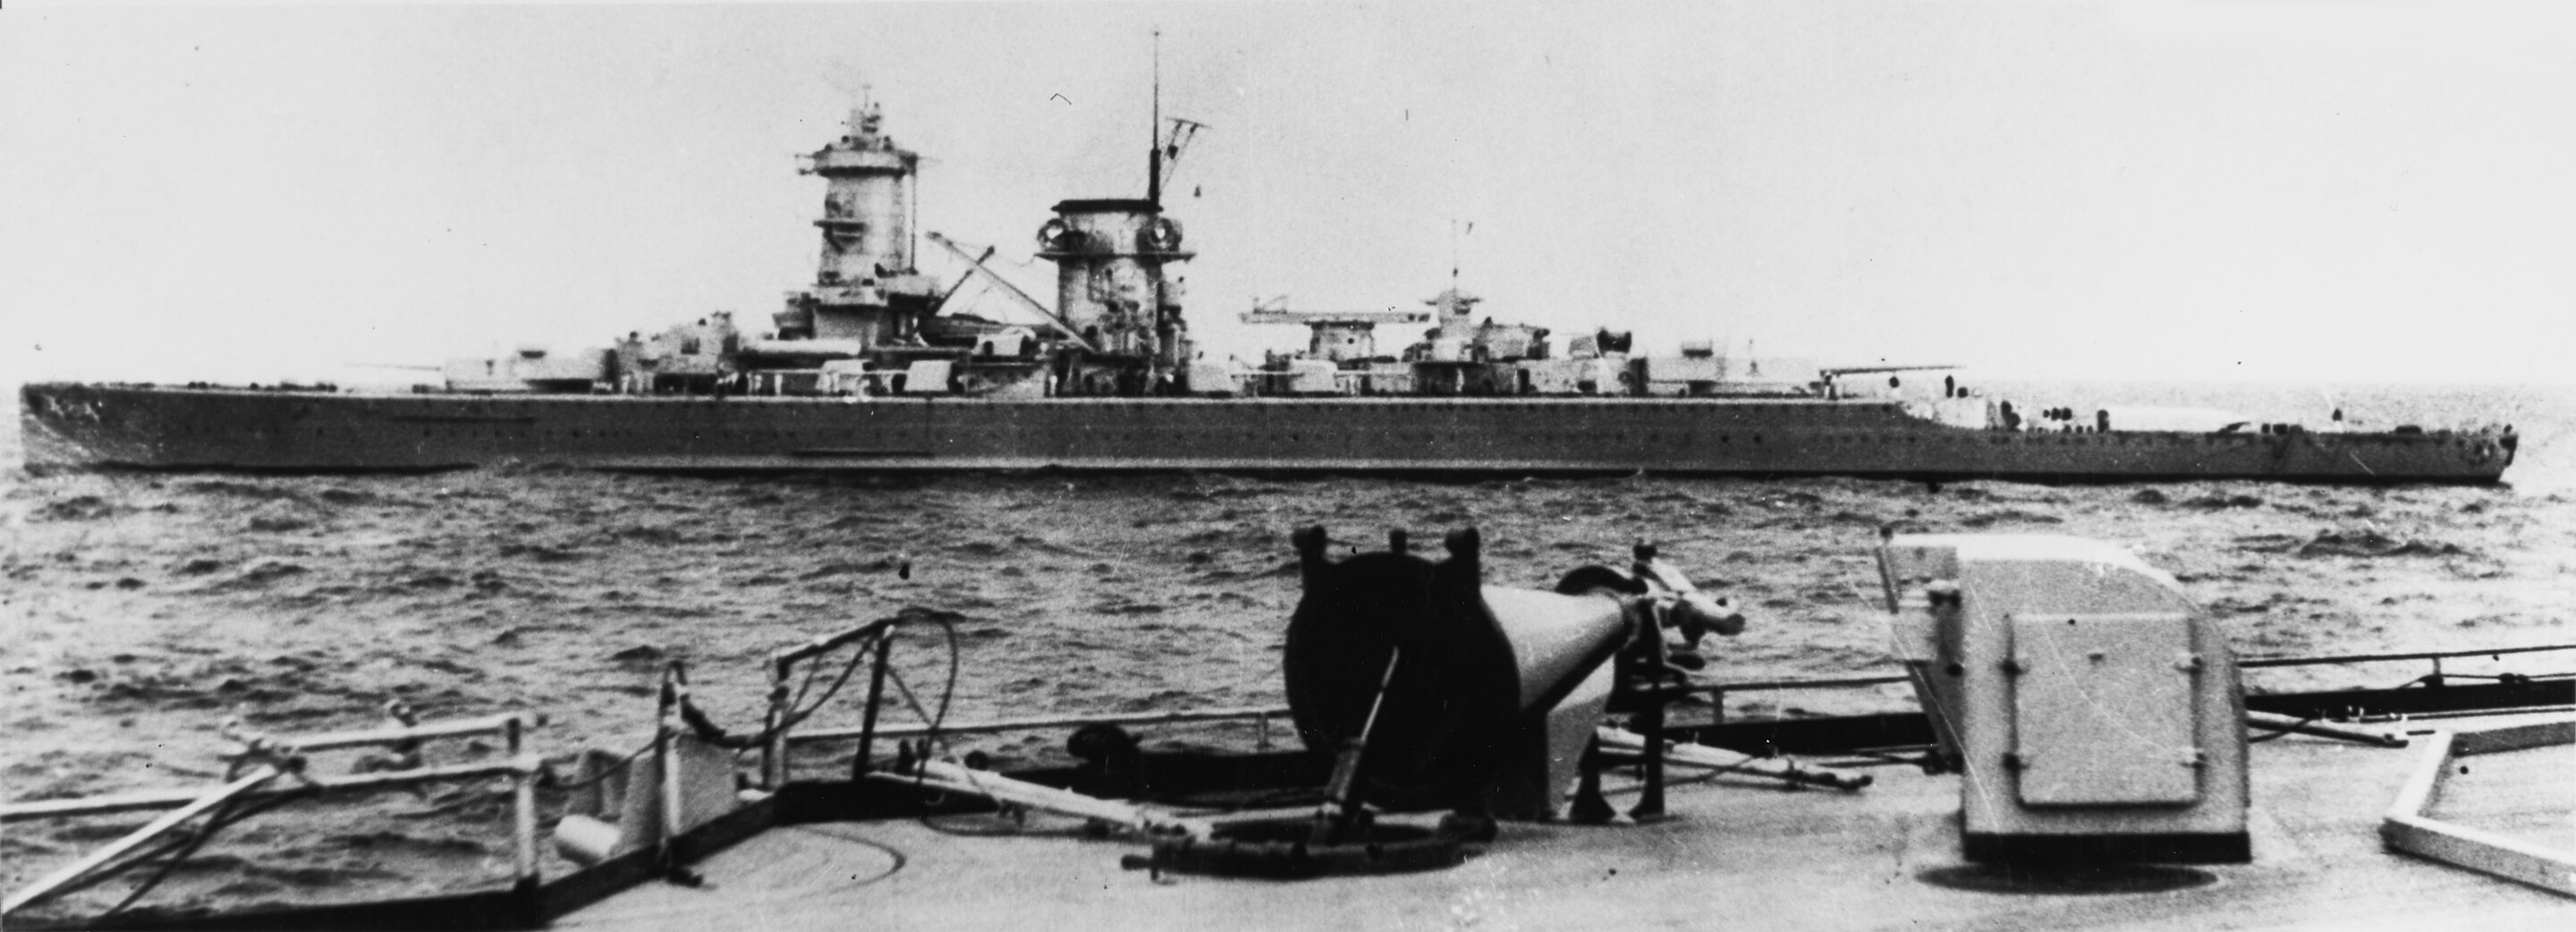 Admiral_Scheer_at_sea_c._1935